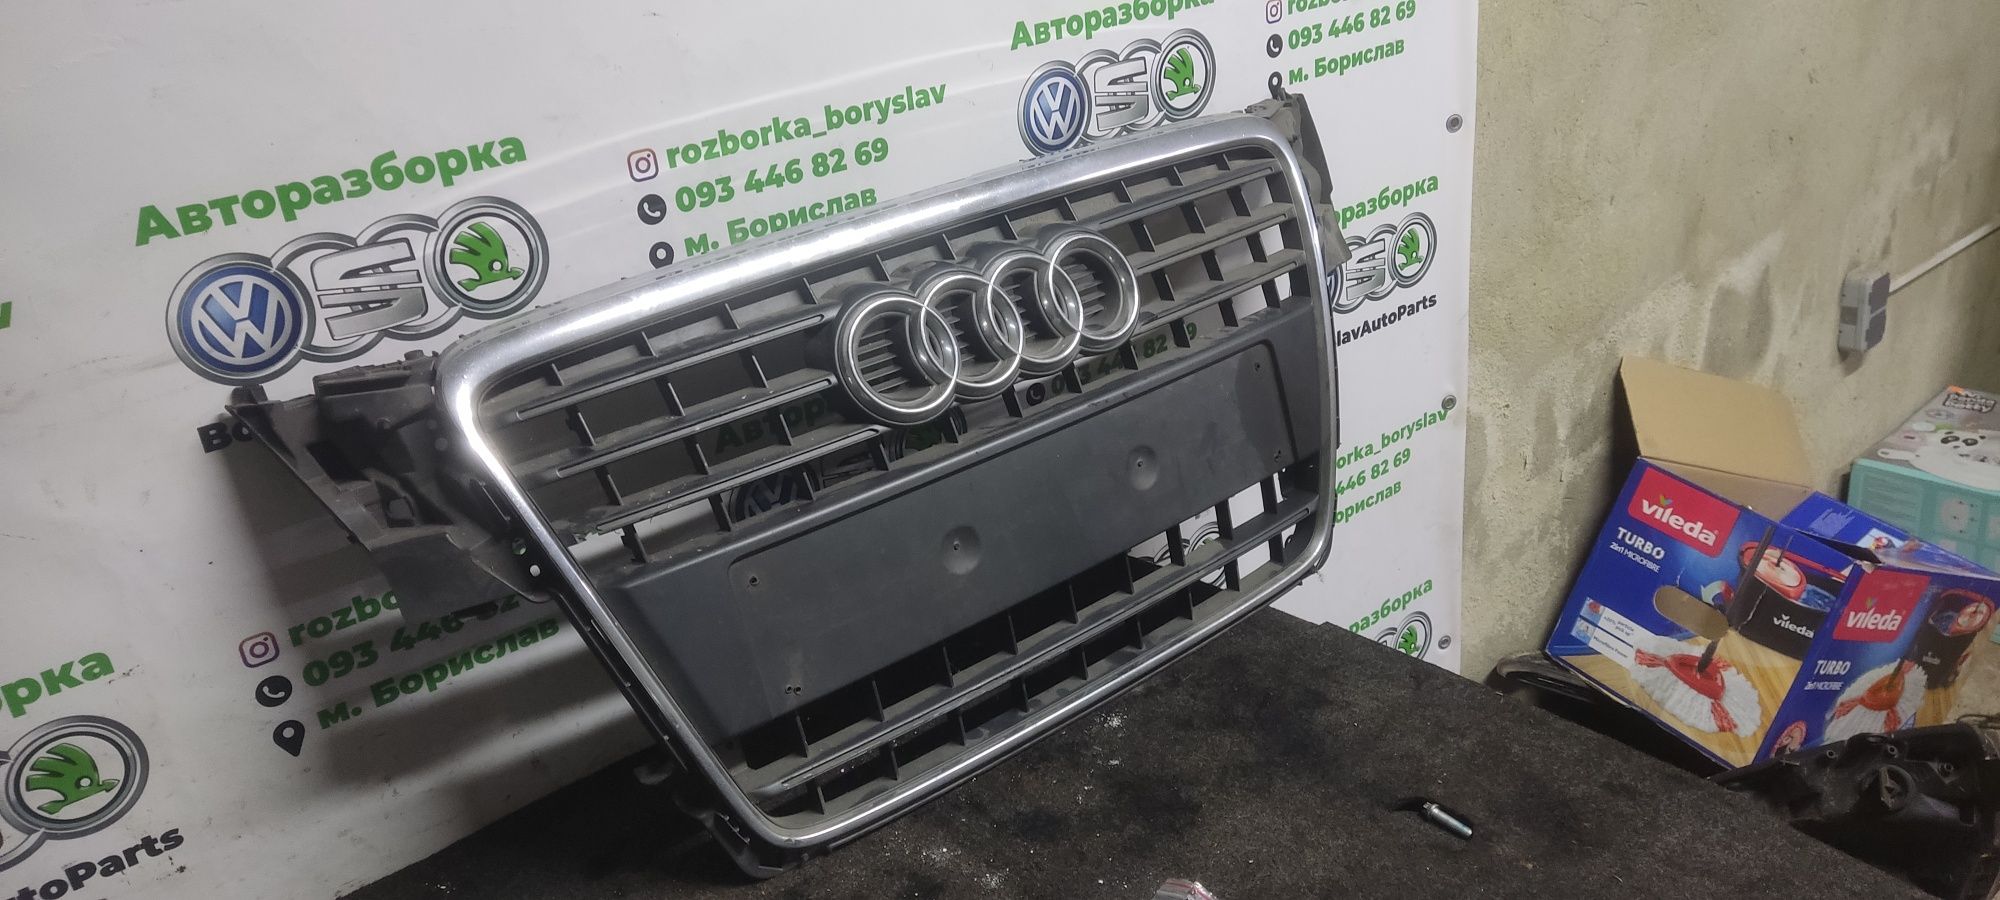 Ришітка Решітка радіатора Audi A4 B8 B5 A6 C4 C5